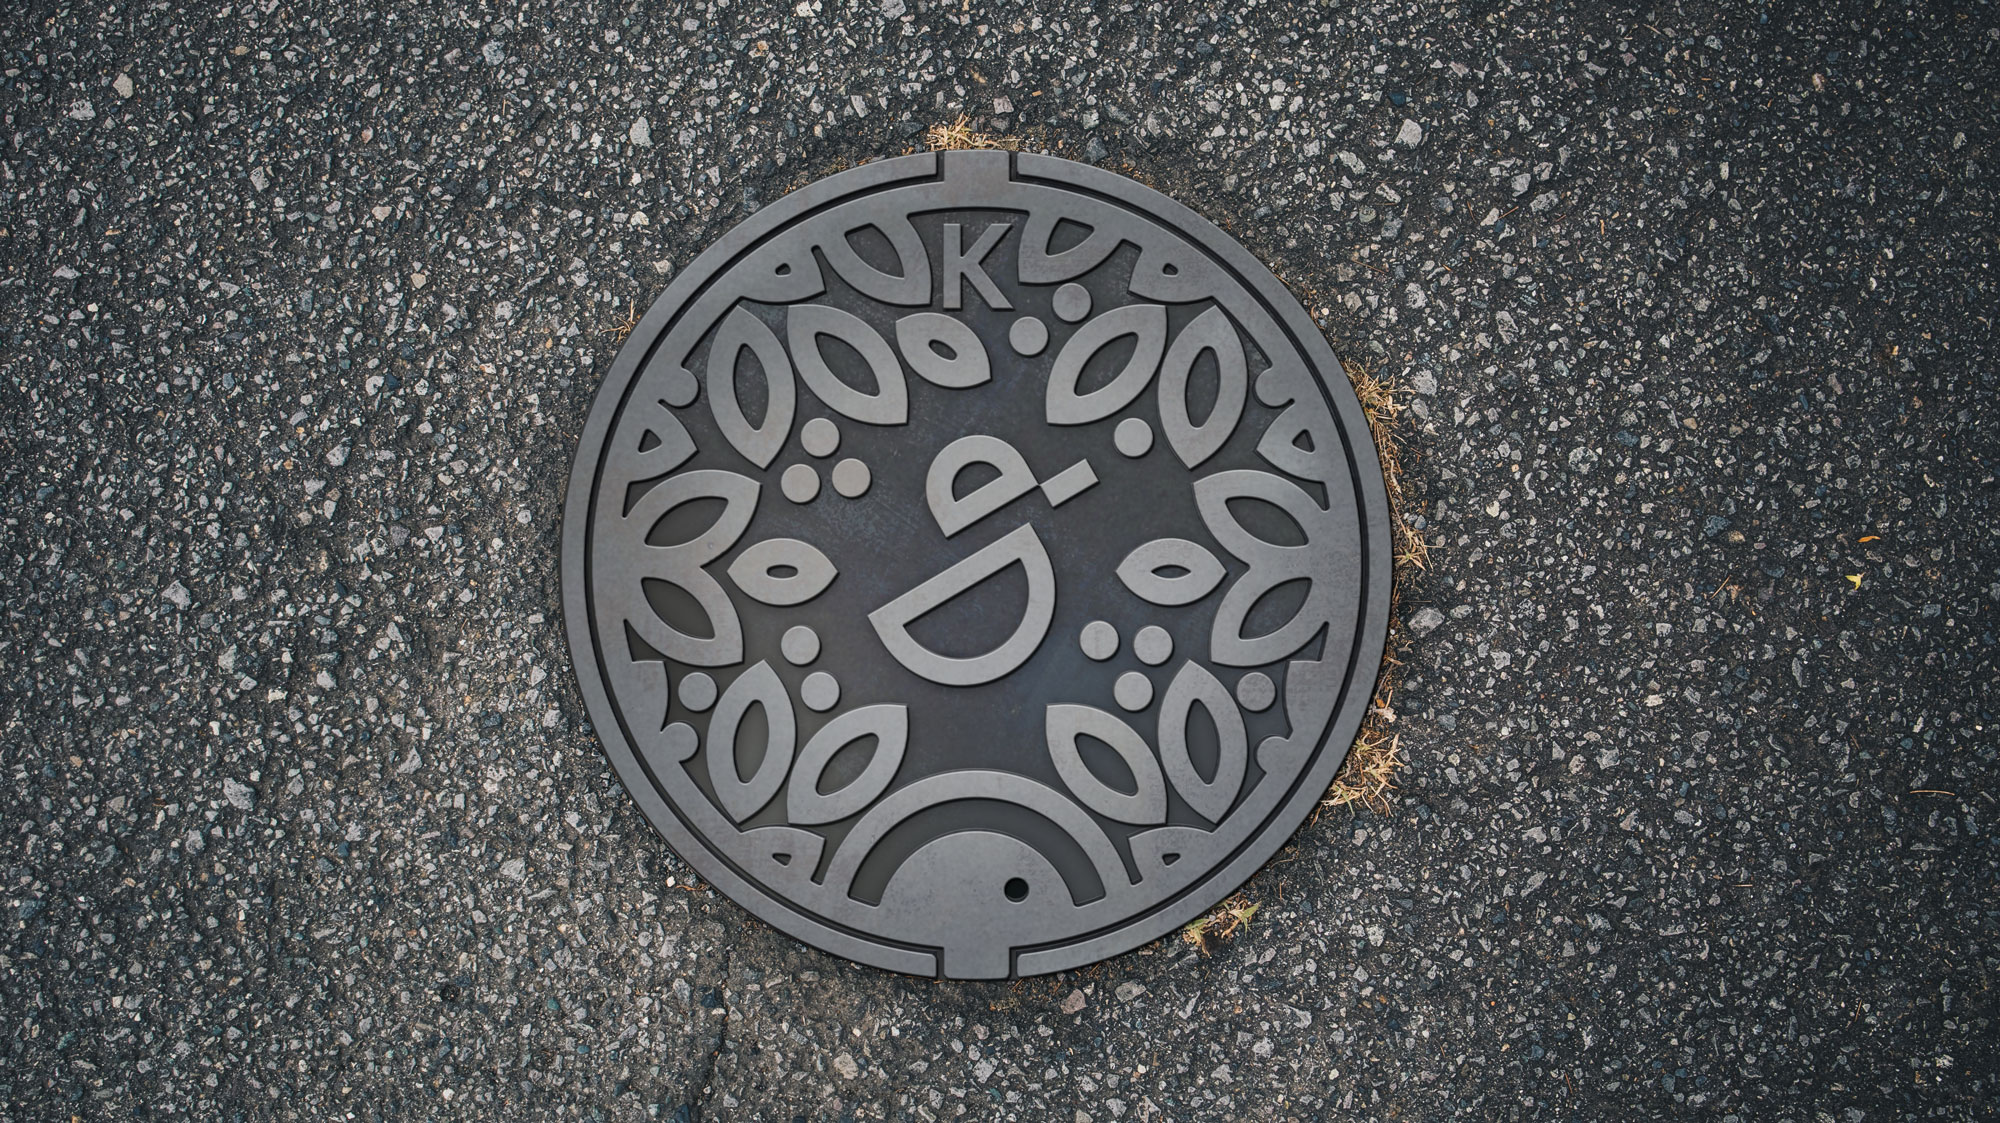 dobrodel logo manhole